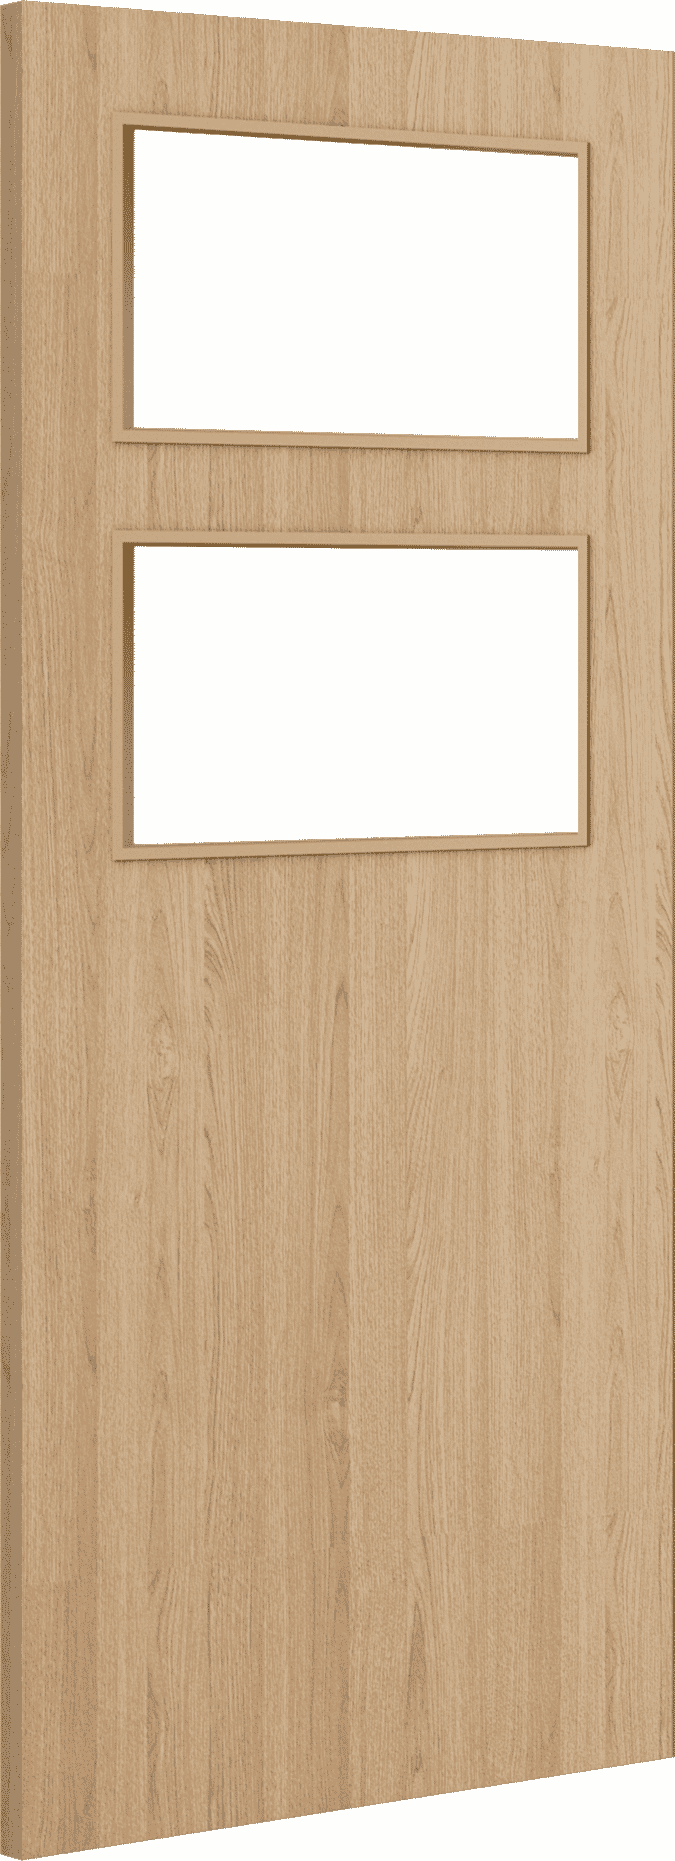 2040mm x 826mm x 44mm Architectural Oak 02 Clear Glazed - Prefinished FD30 Fire Door Blank